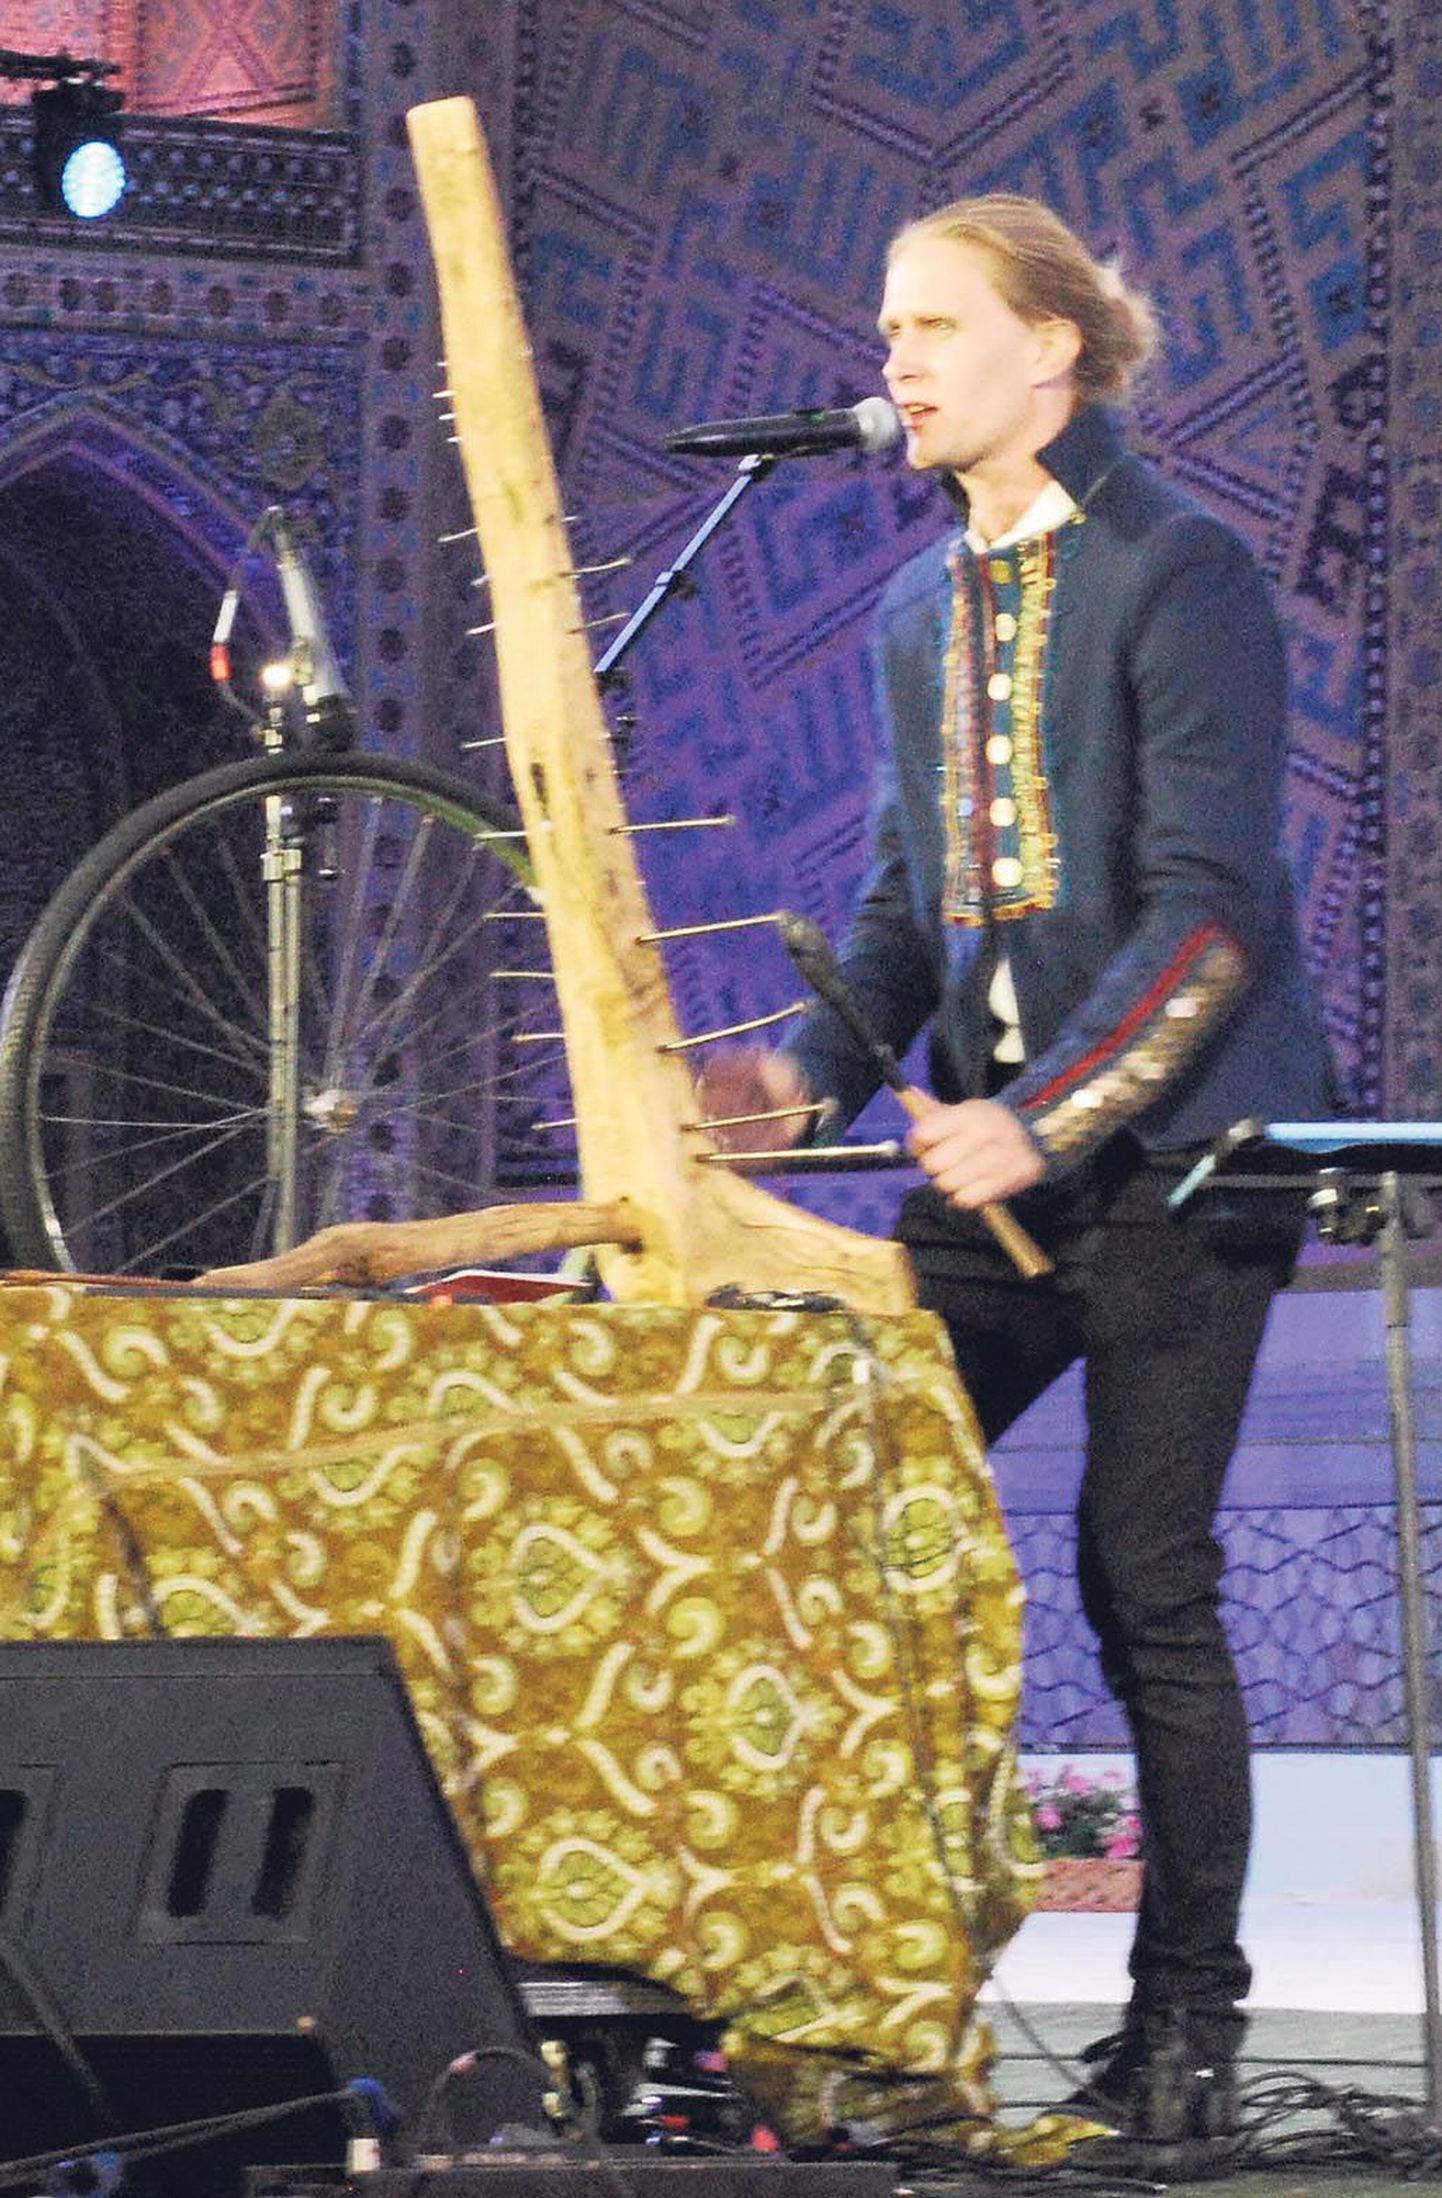 Silver Sepp mõjus Kagu-Aasia festivalil naelapillil ja jalgratta esirattal musitseerides nagu värske puhang.